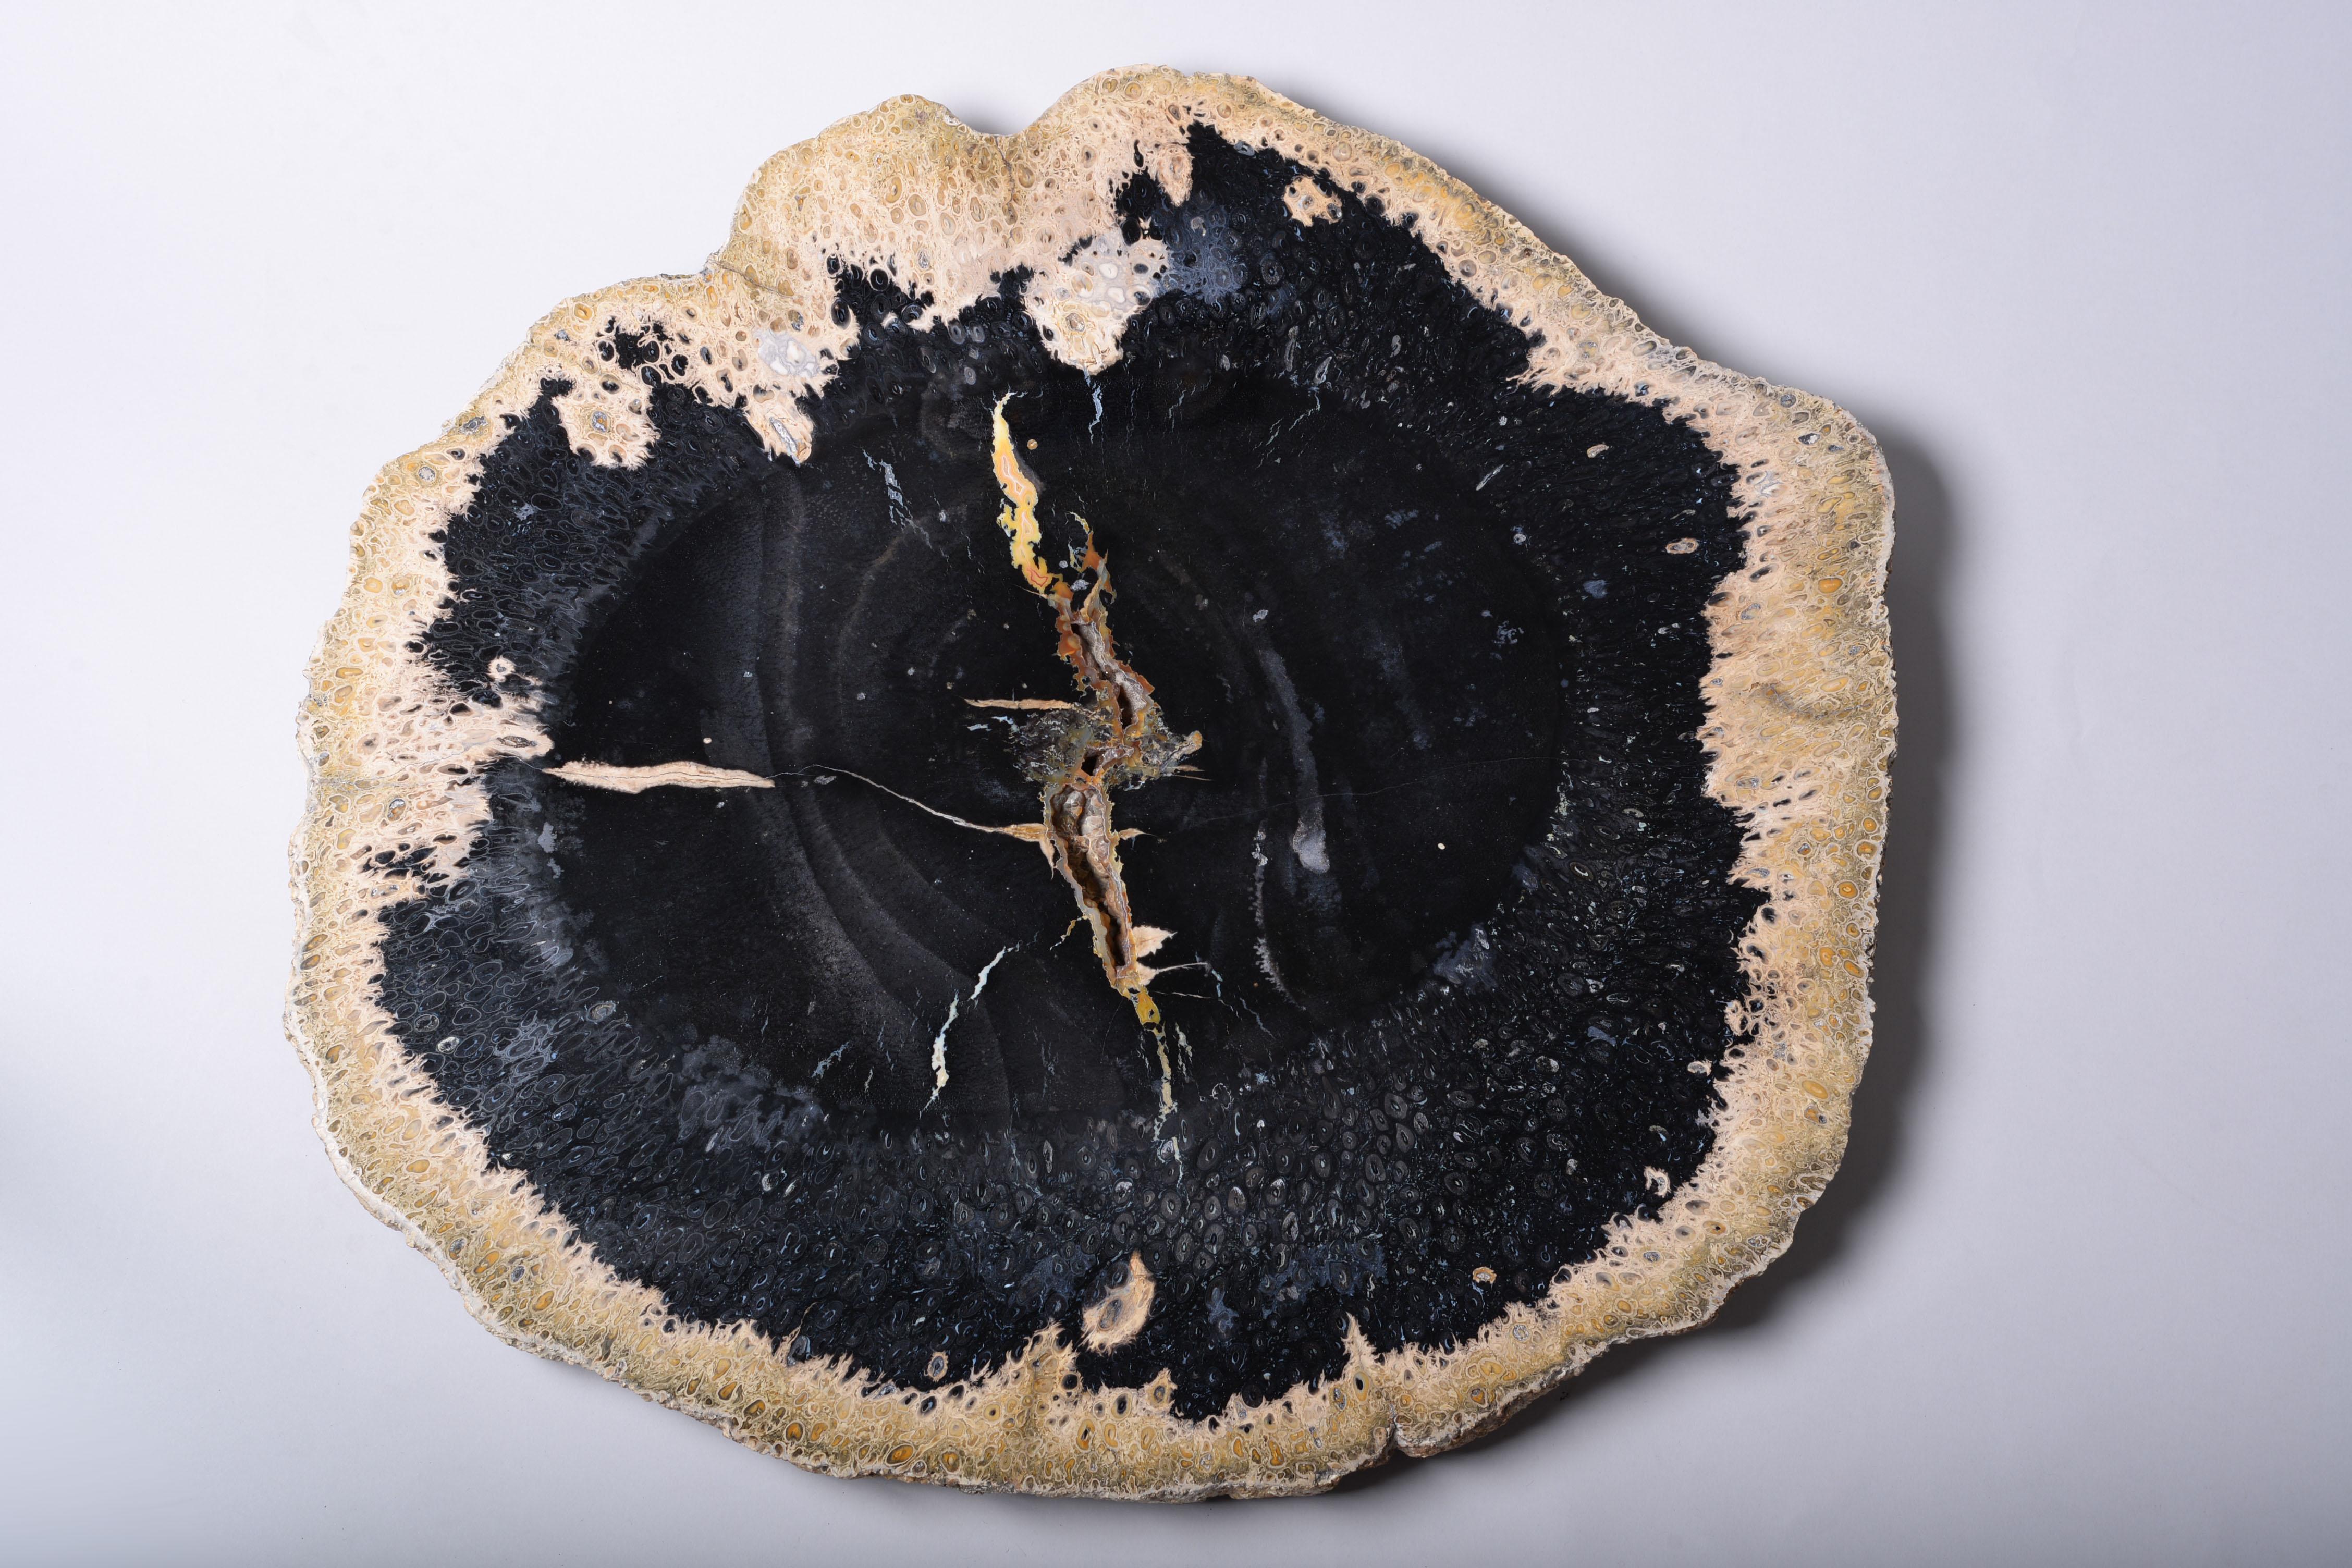 Giant Jet Black Petrified Palm Wood Fossil 4